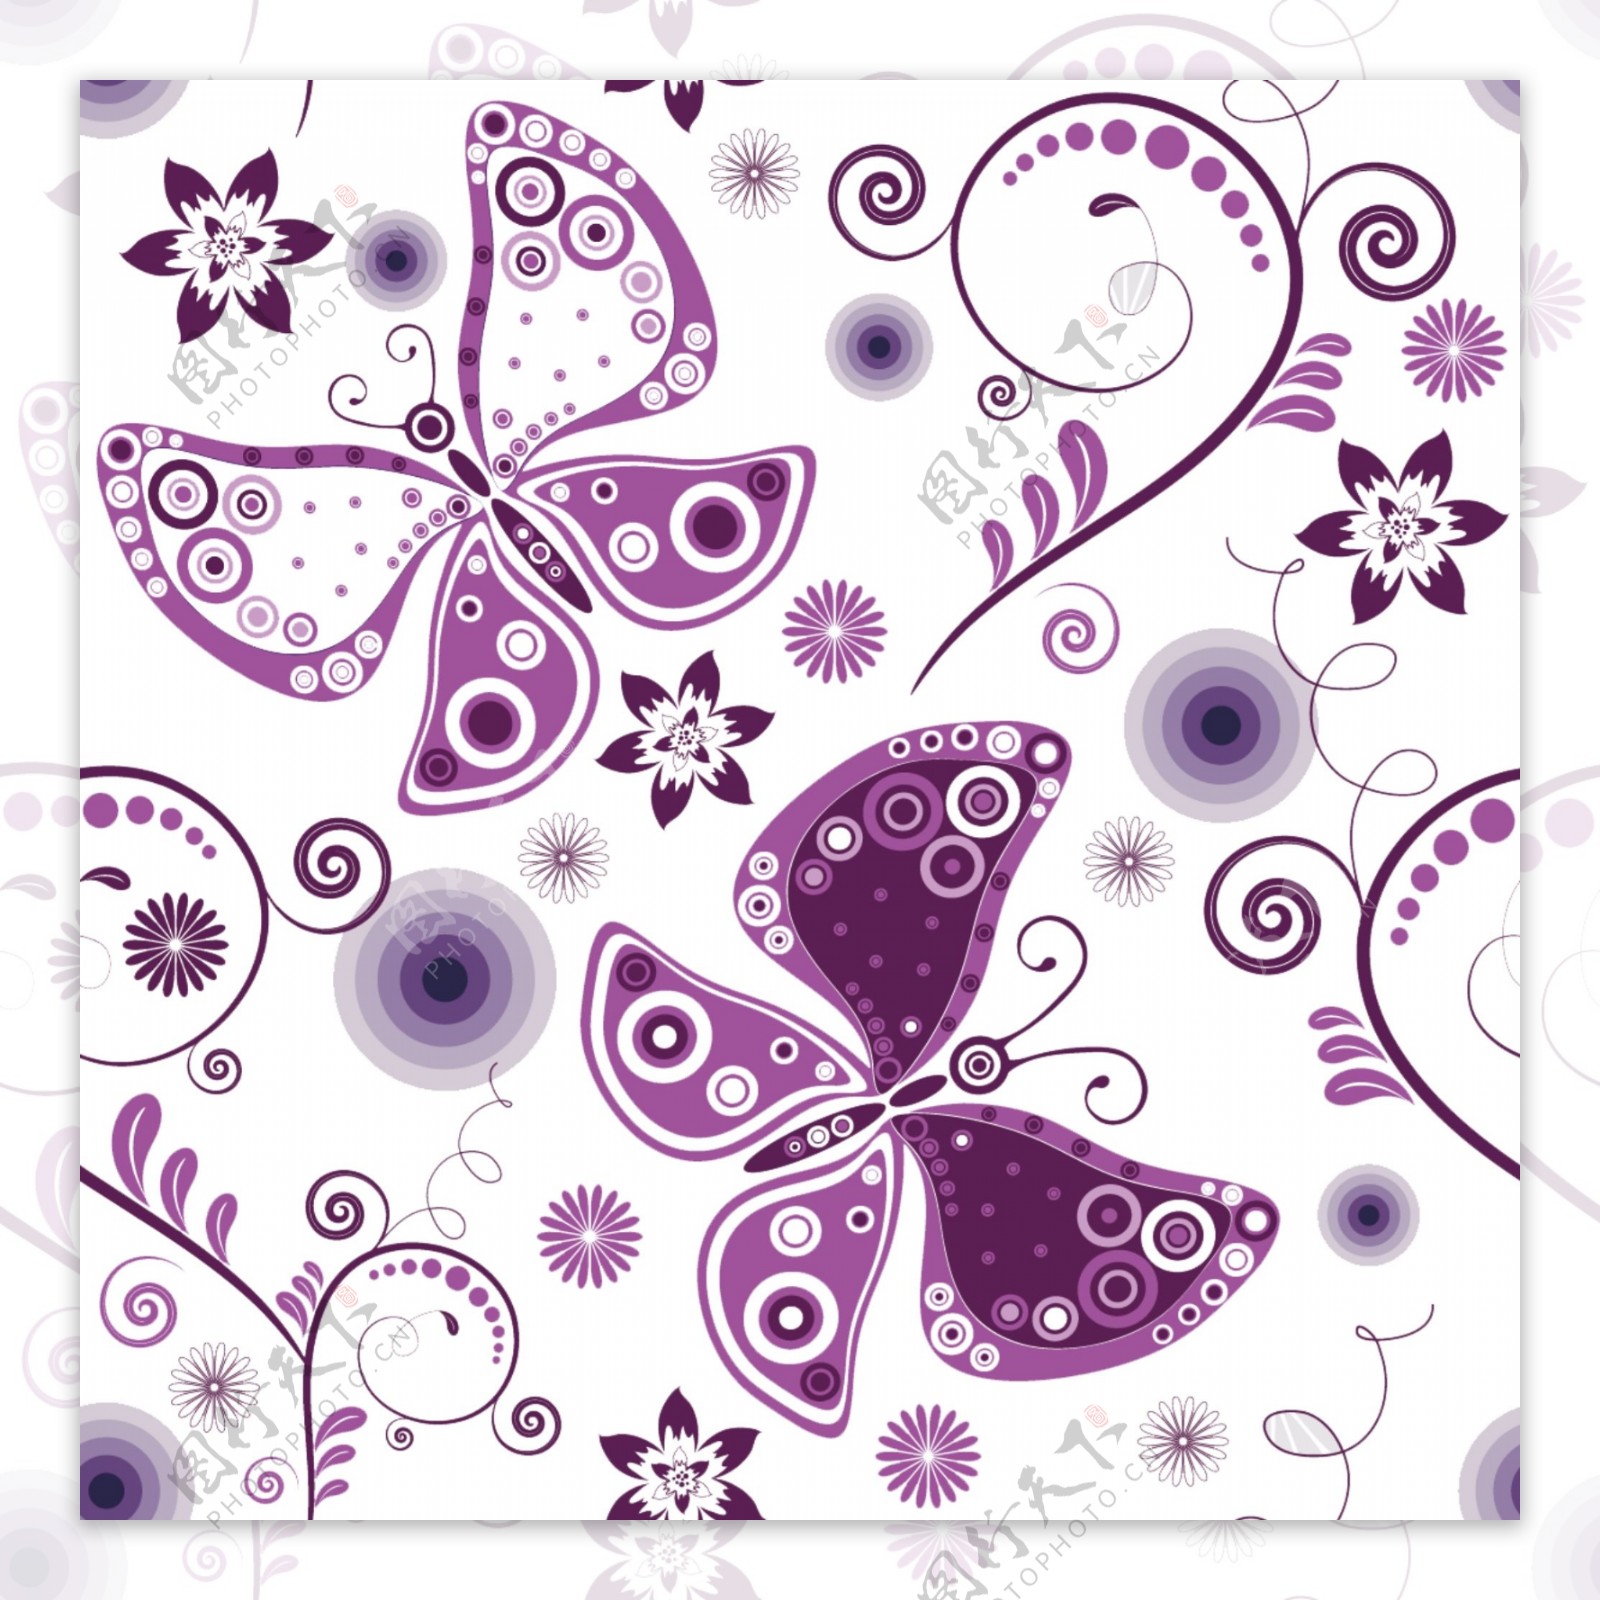 紫色蝴蝶图片